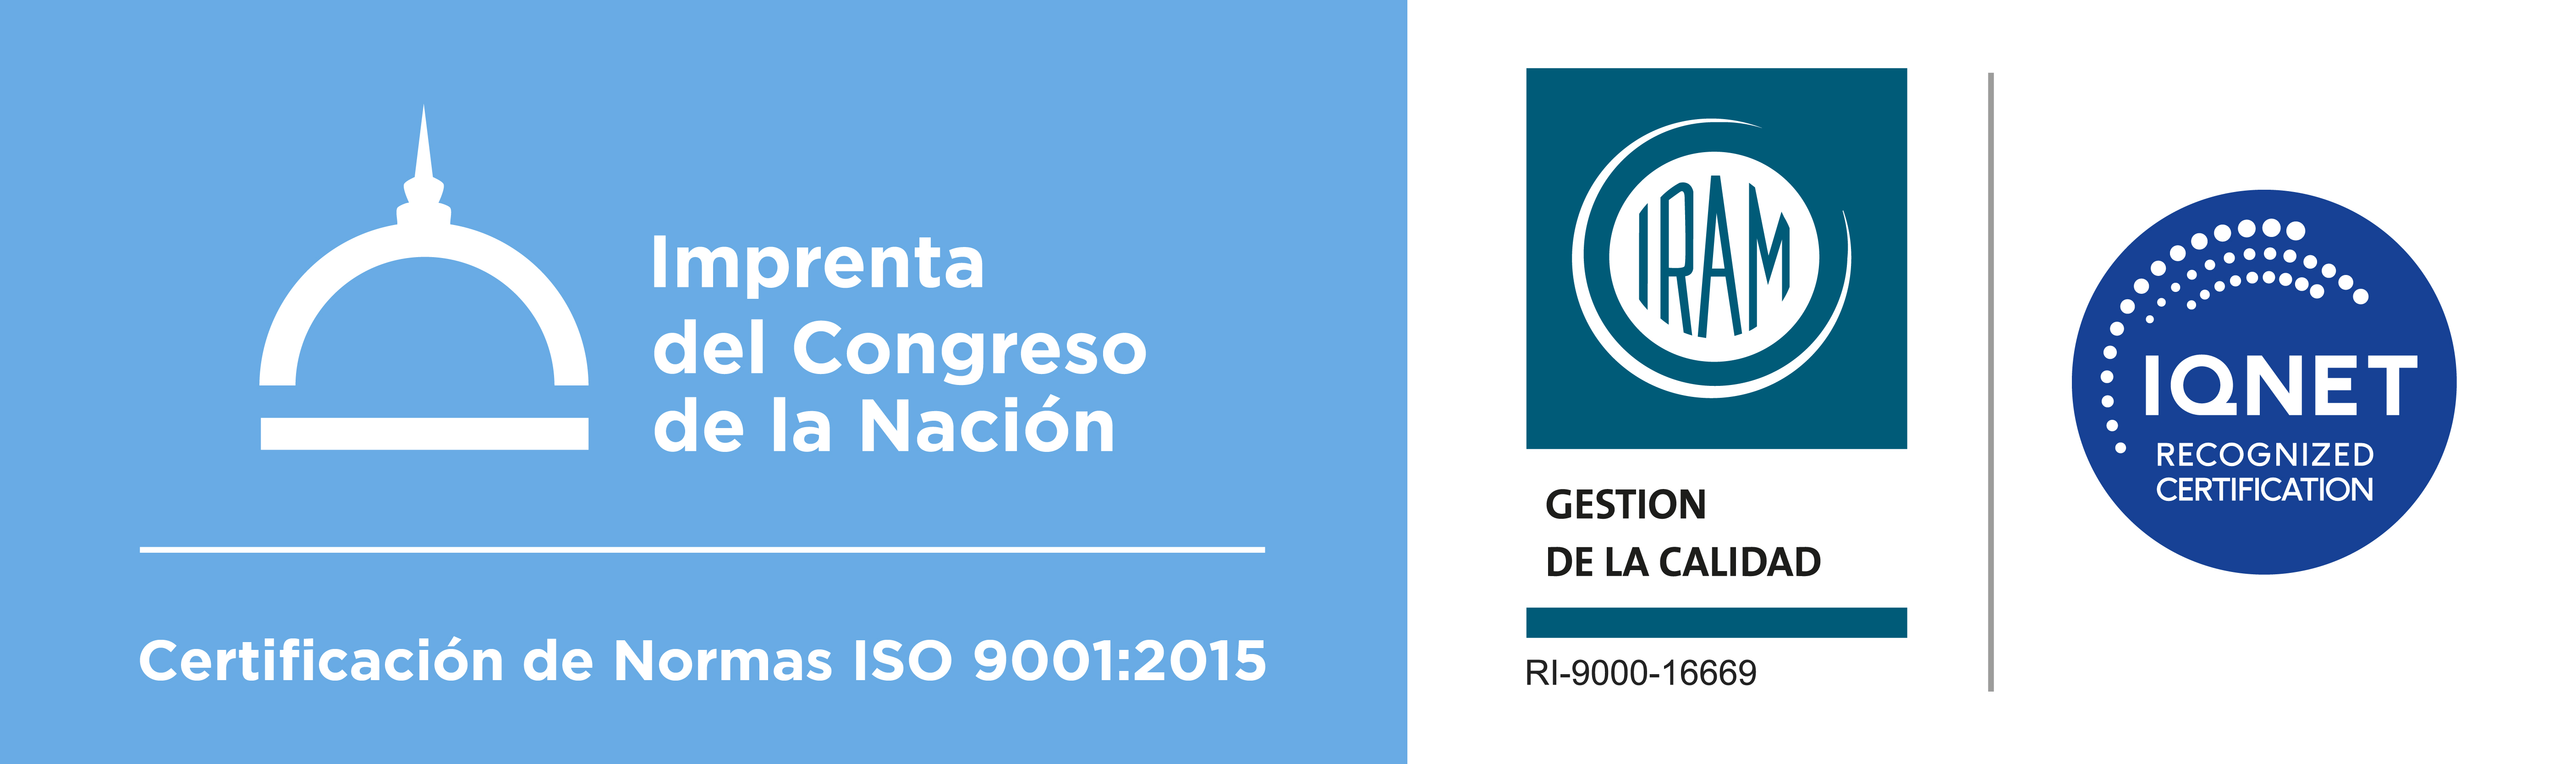 CERTIFICACION ISO 9001